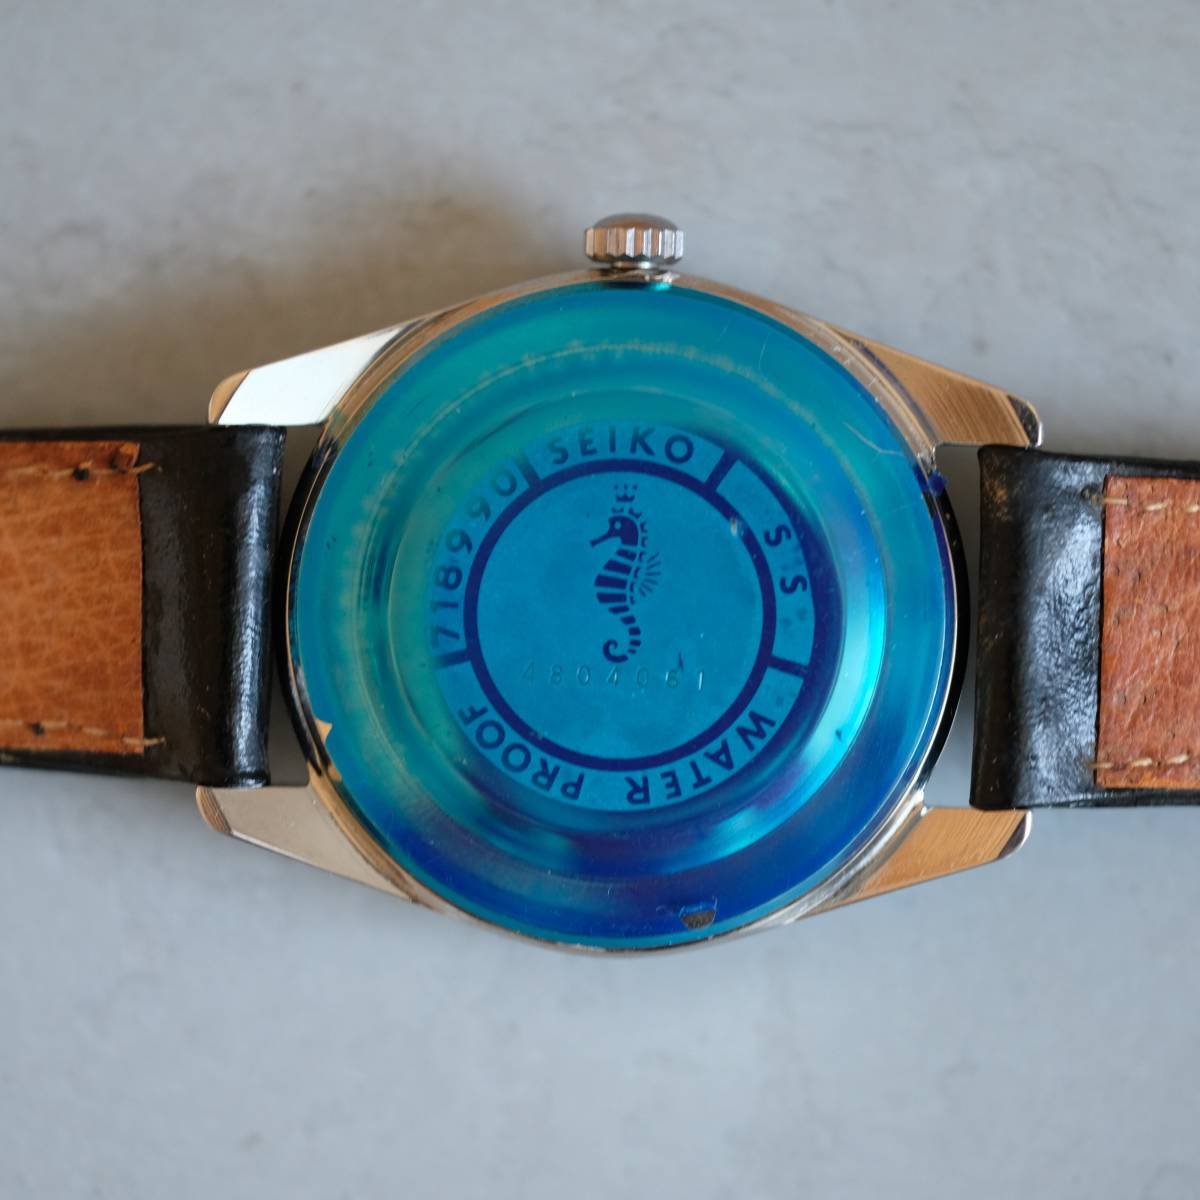 デッドストック DEADSTOCK セイコー クロノス Seiko Cronos Self Dater 手巻き 718990 21 jewels 1964年 昭和39年製造 アンティーク時計の画像7